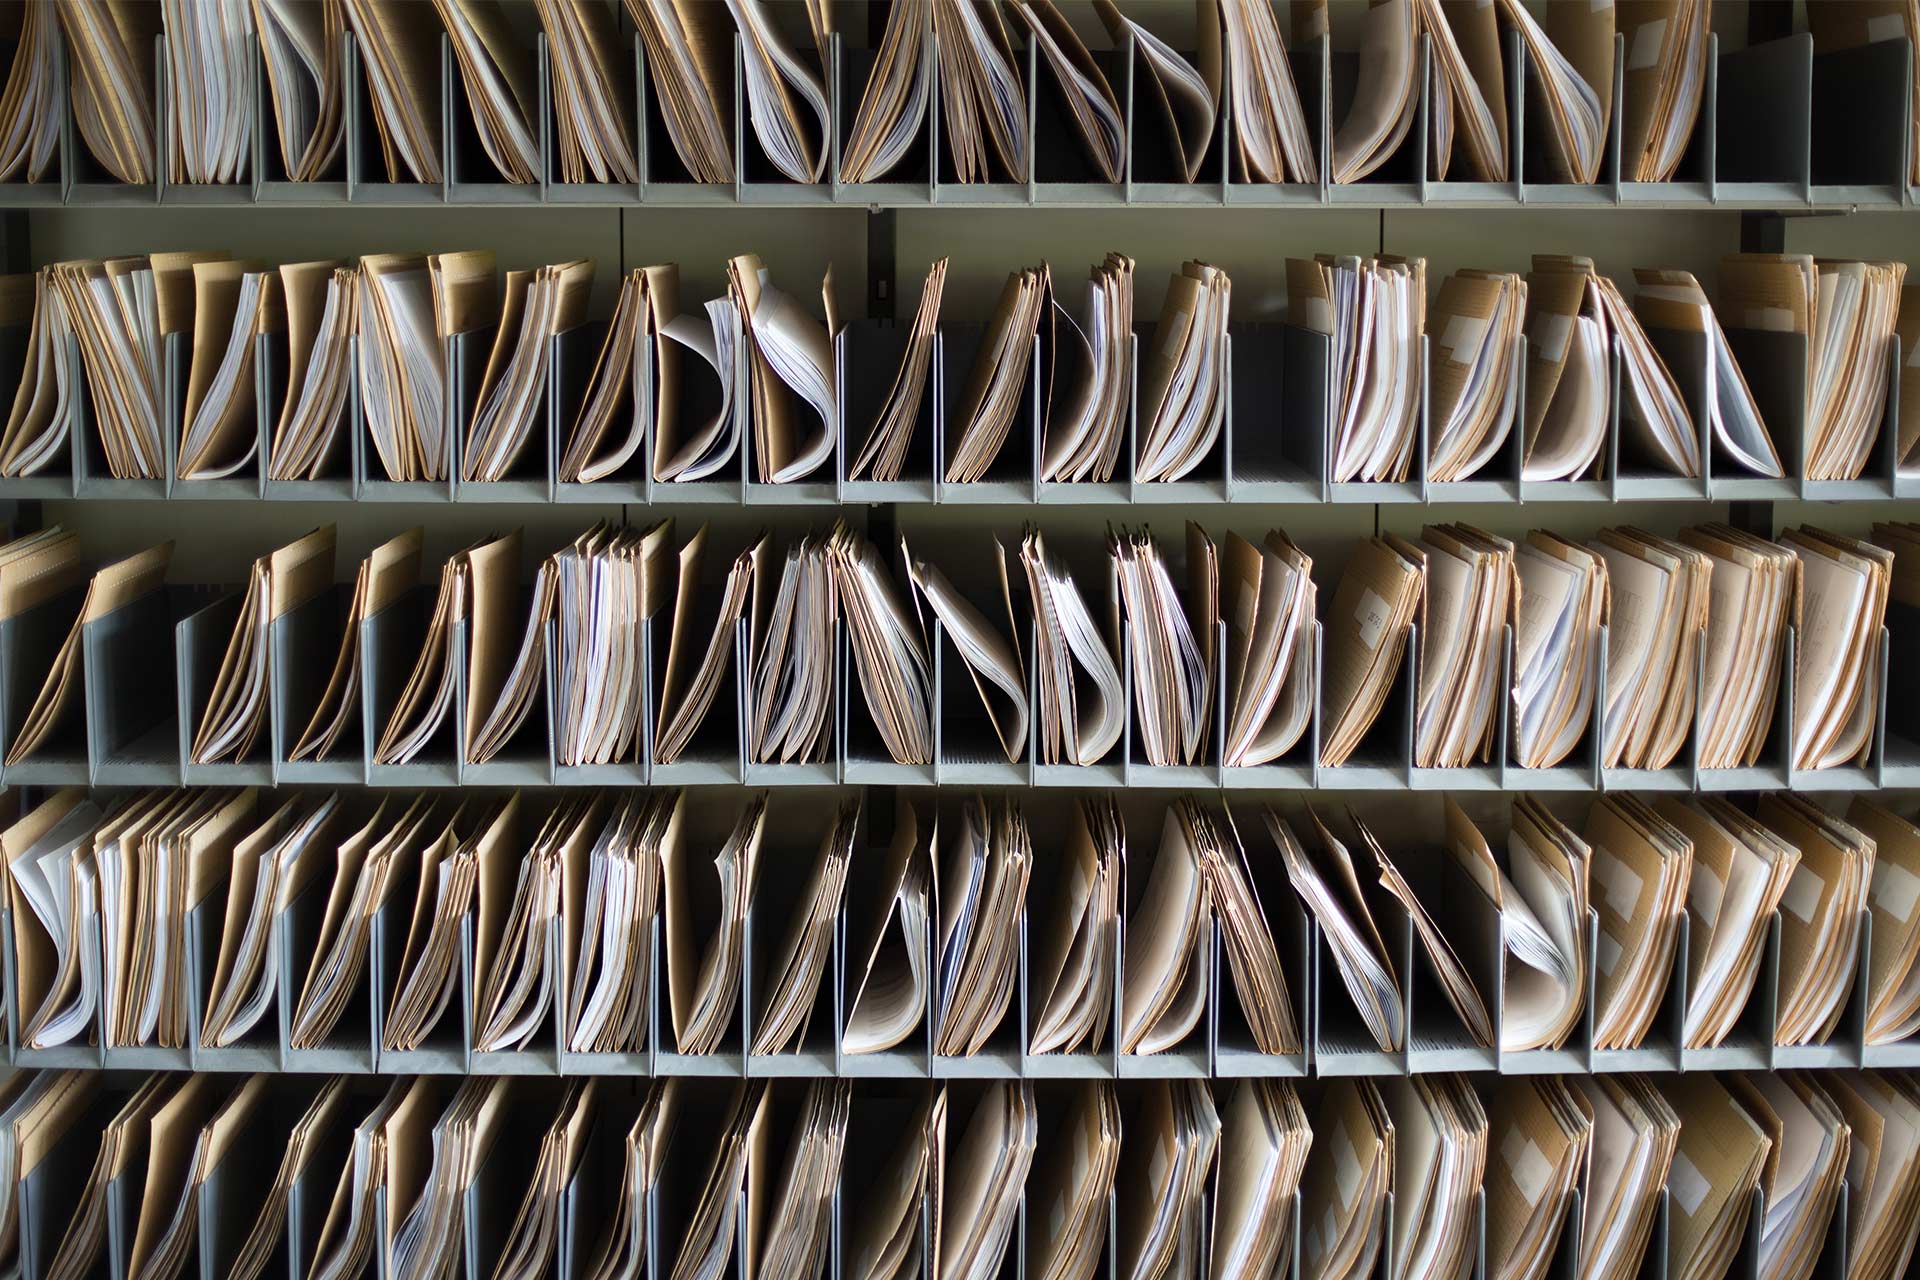 File di documenti cartacei in delle cartelle organizzate in scomparti.